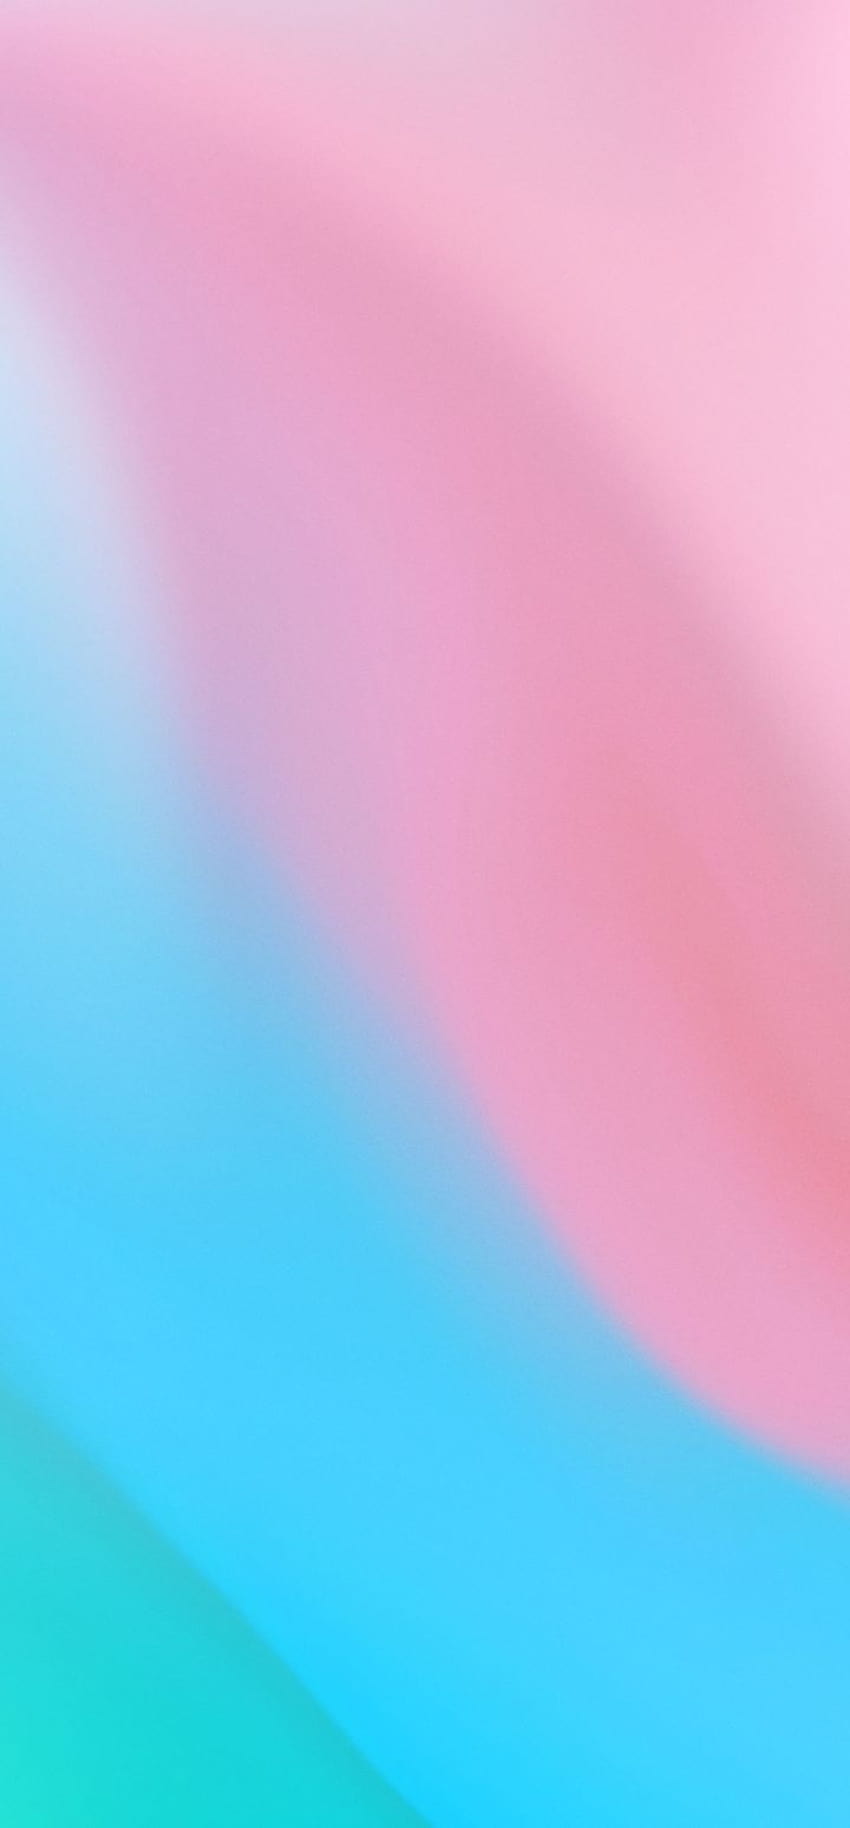 720x1548 Miscela colore rosa blu Risoluzione 720x1548, miscela blu e rosa Sfondo del telefono HD